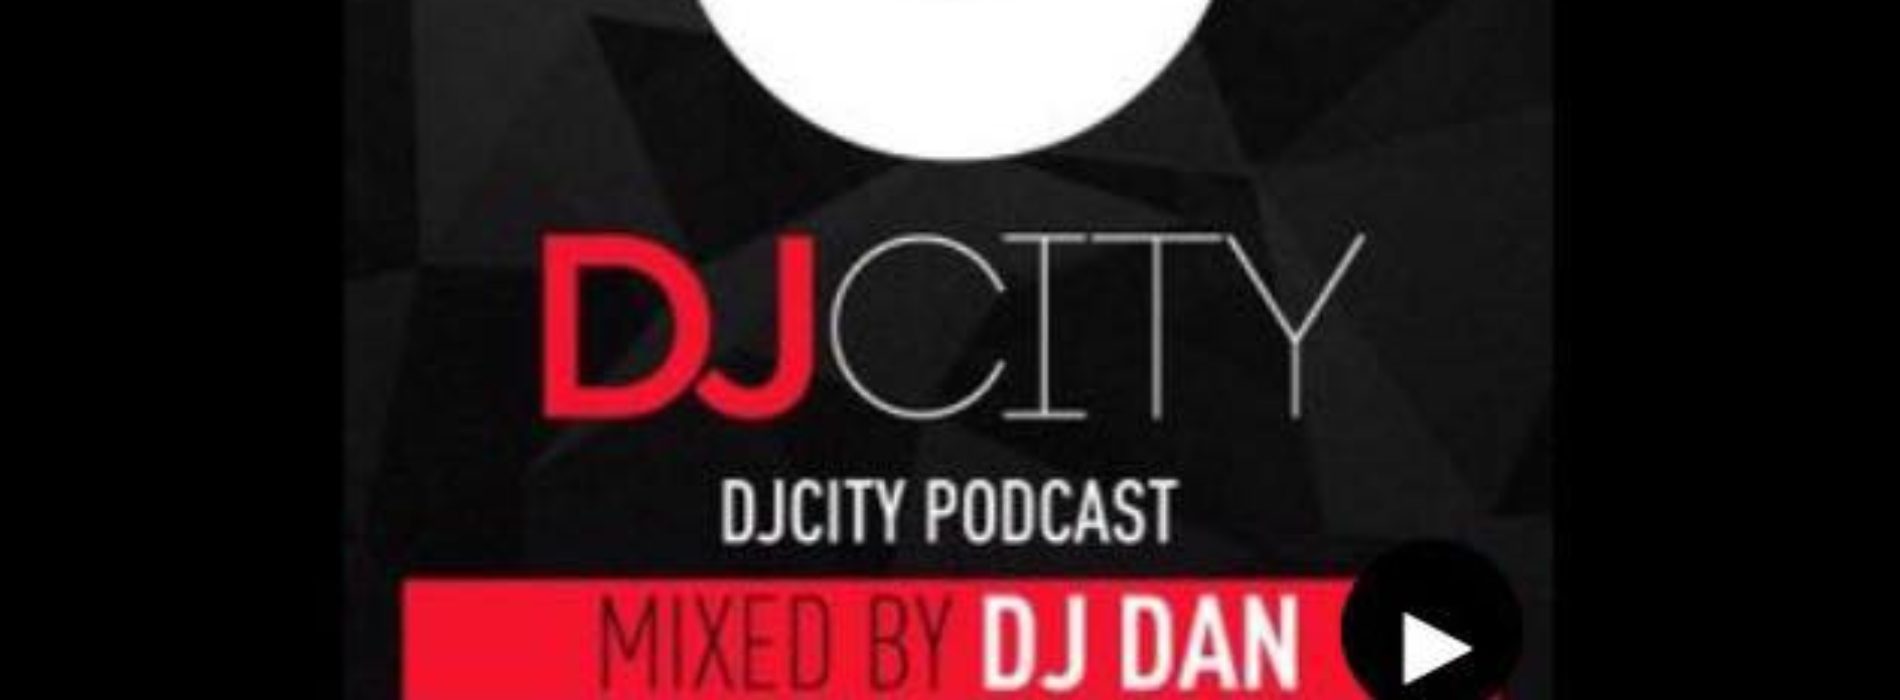 Écoute le Mix de DJ DAN sur DJCITY . Janvier 2018